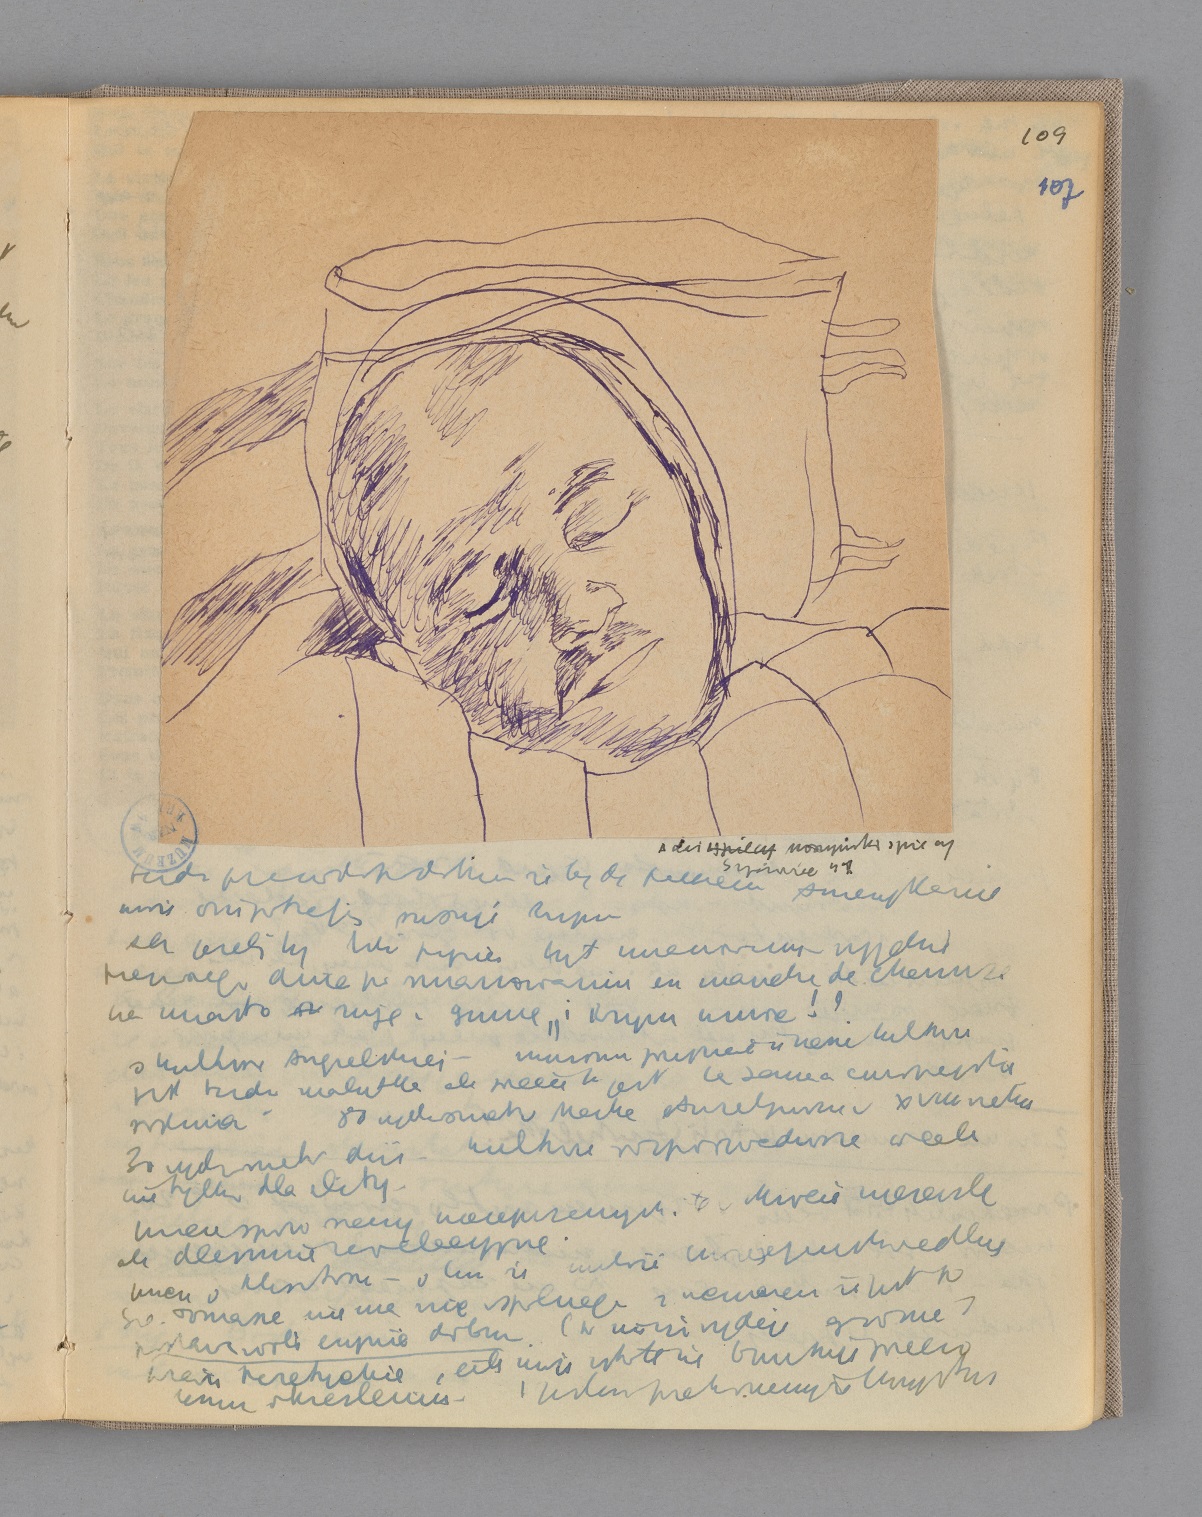 Zapisana drobnym pismem strona, z wklejonymi rysunkiem śpiącego mężczyzny.